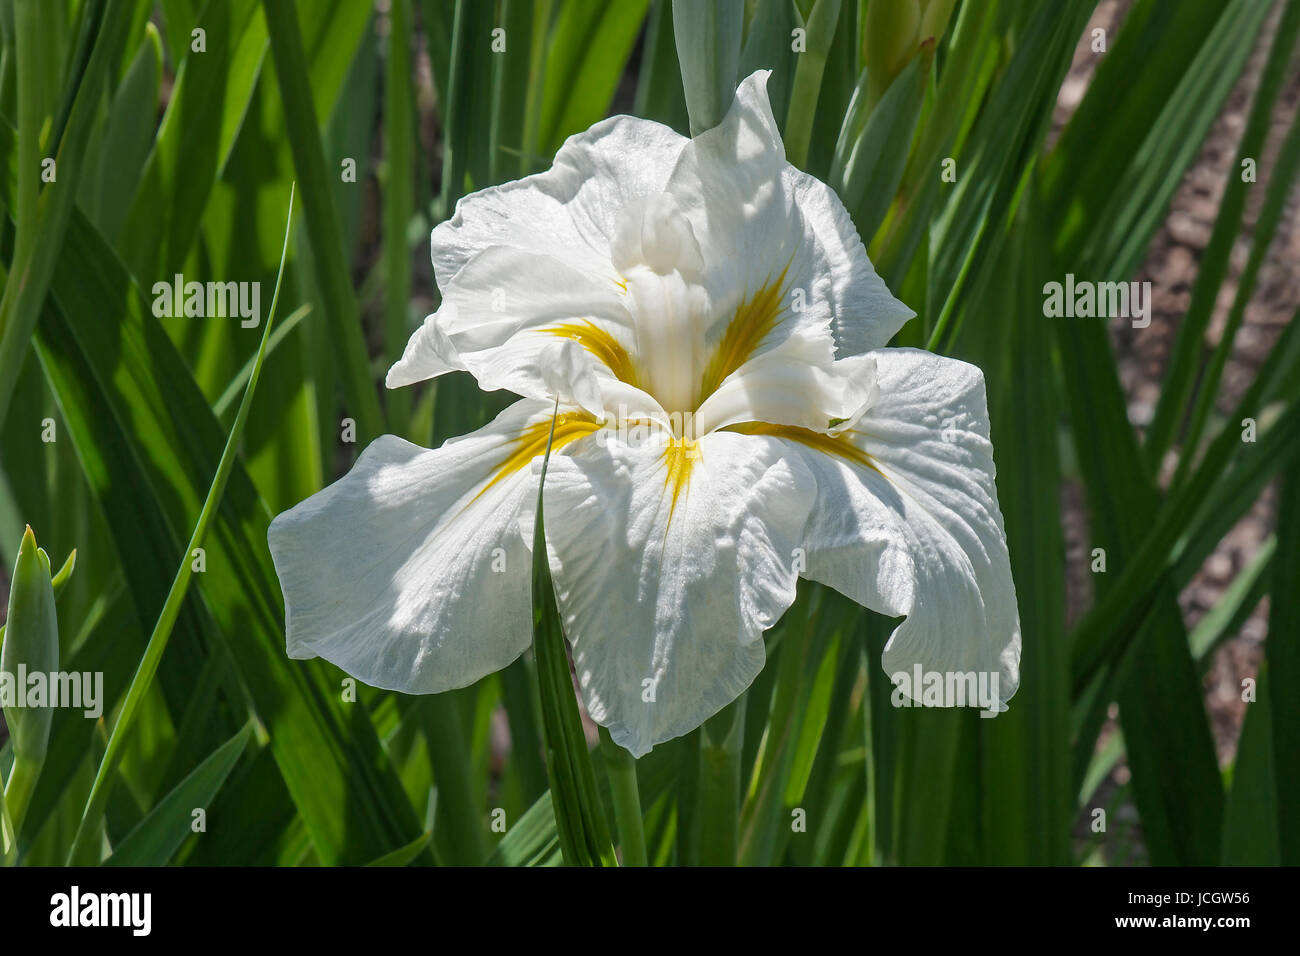 Freckled Geisha bandiera giapponese iris (Iris ensata Freckled Geisha) Foto Stock